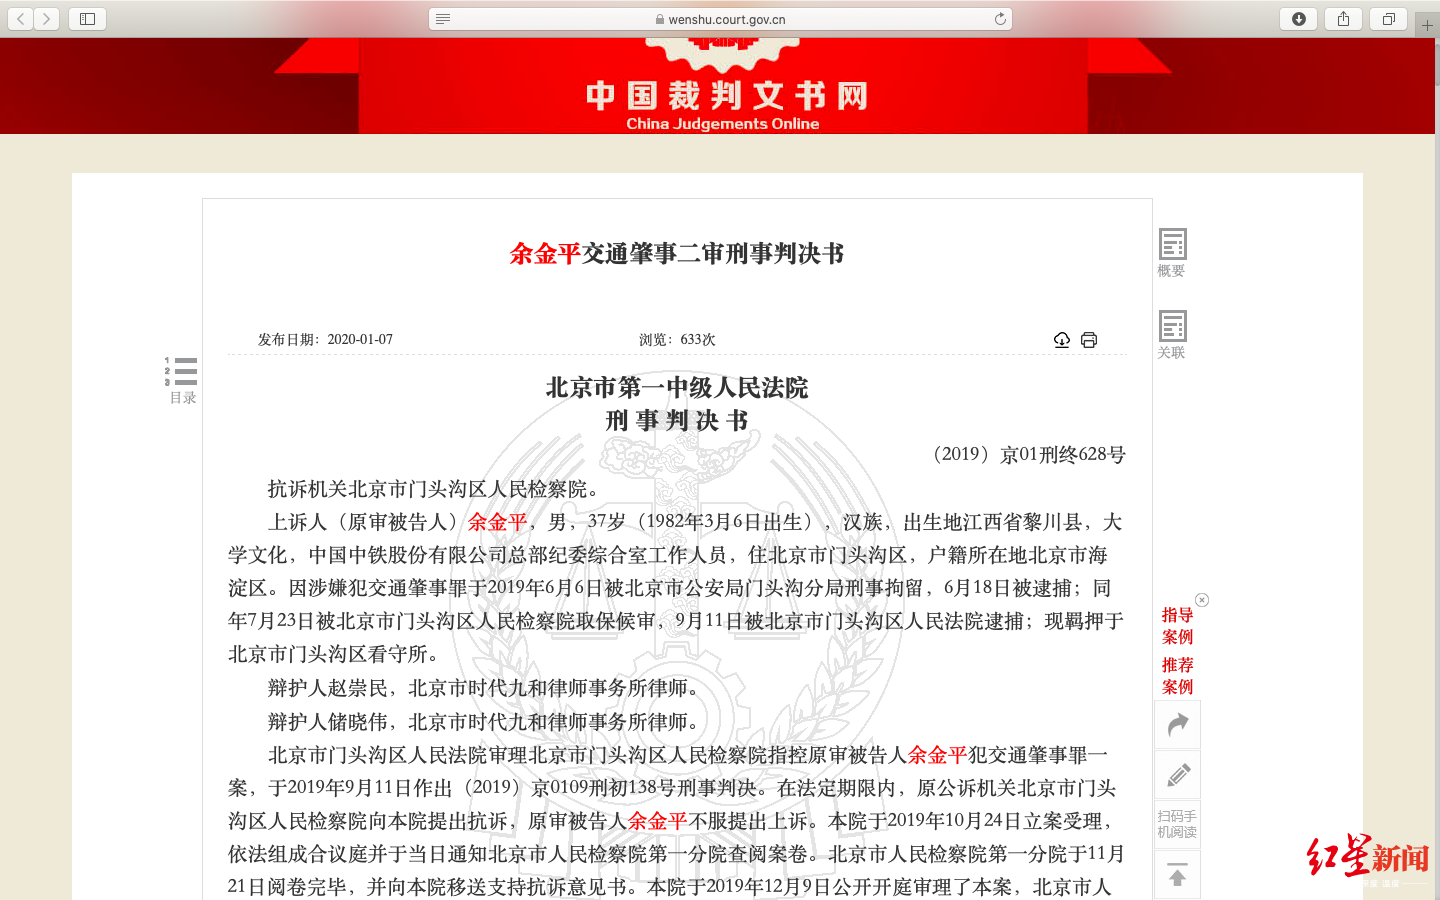 中国裁判文书在线查询亚博买球门户中输入的个人信息全部错误。